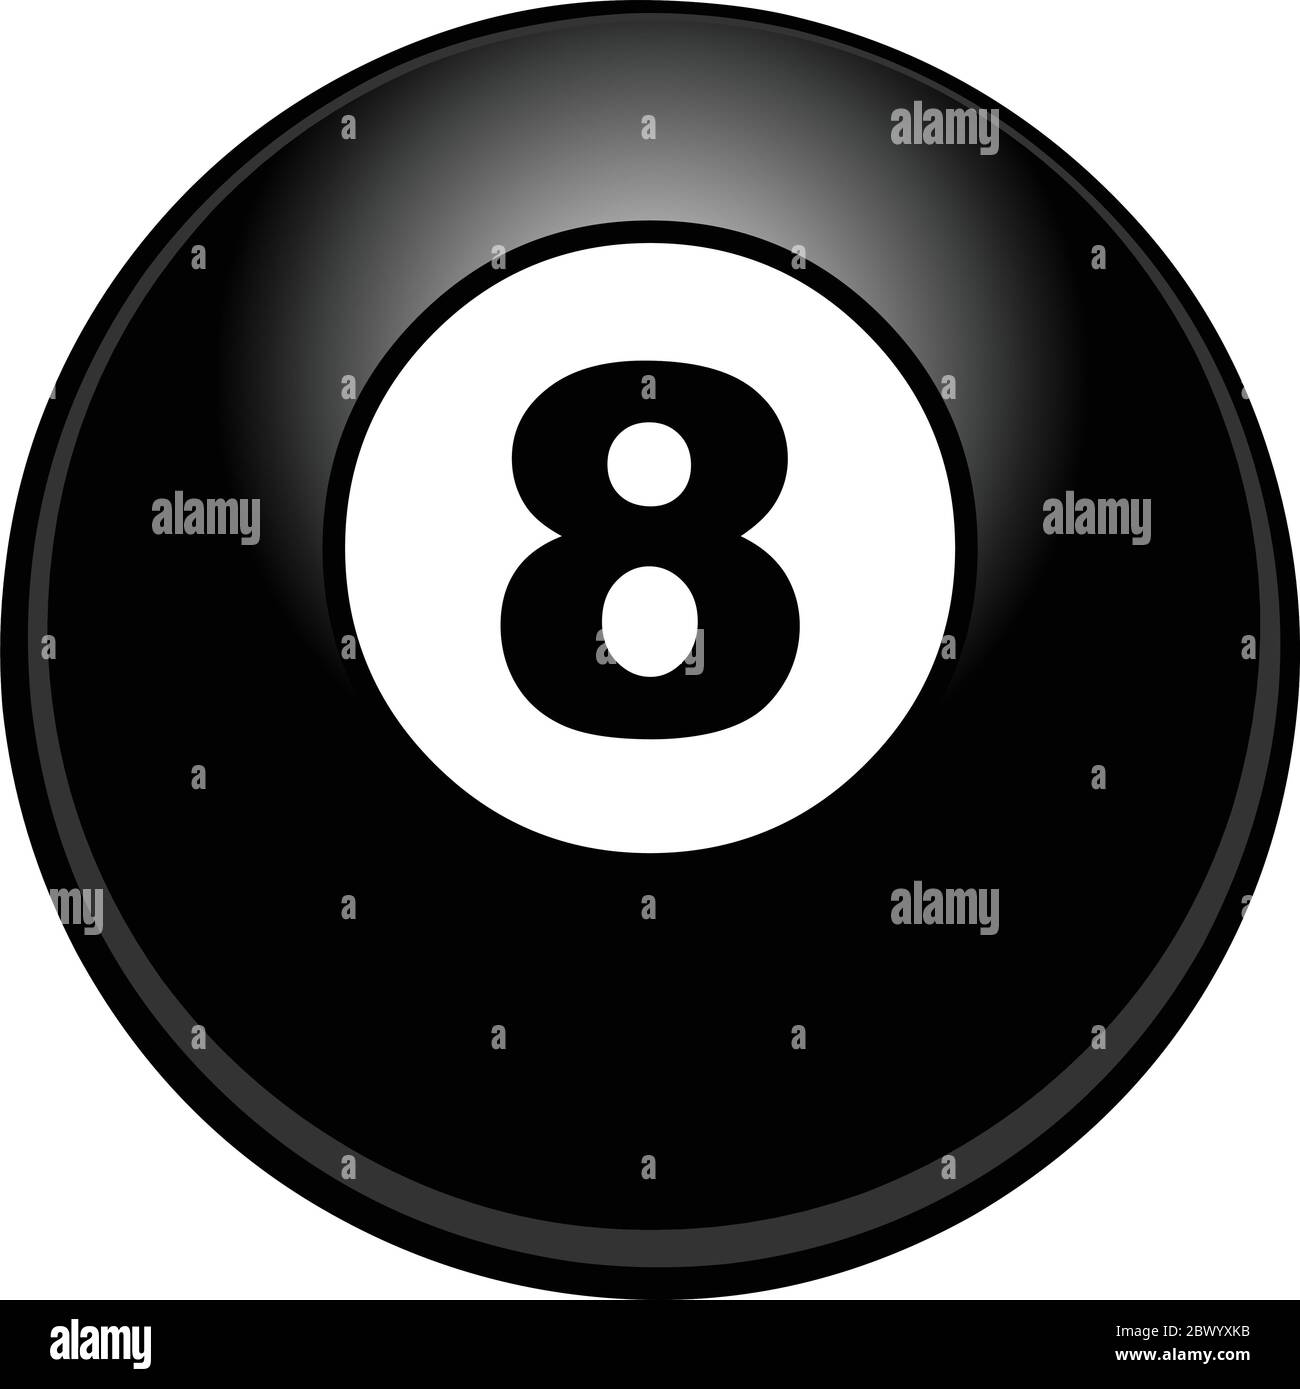 Eight ball pool Banque d'images noir et blanc - Alamy